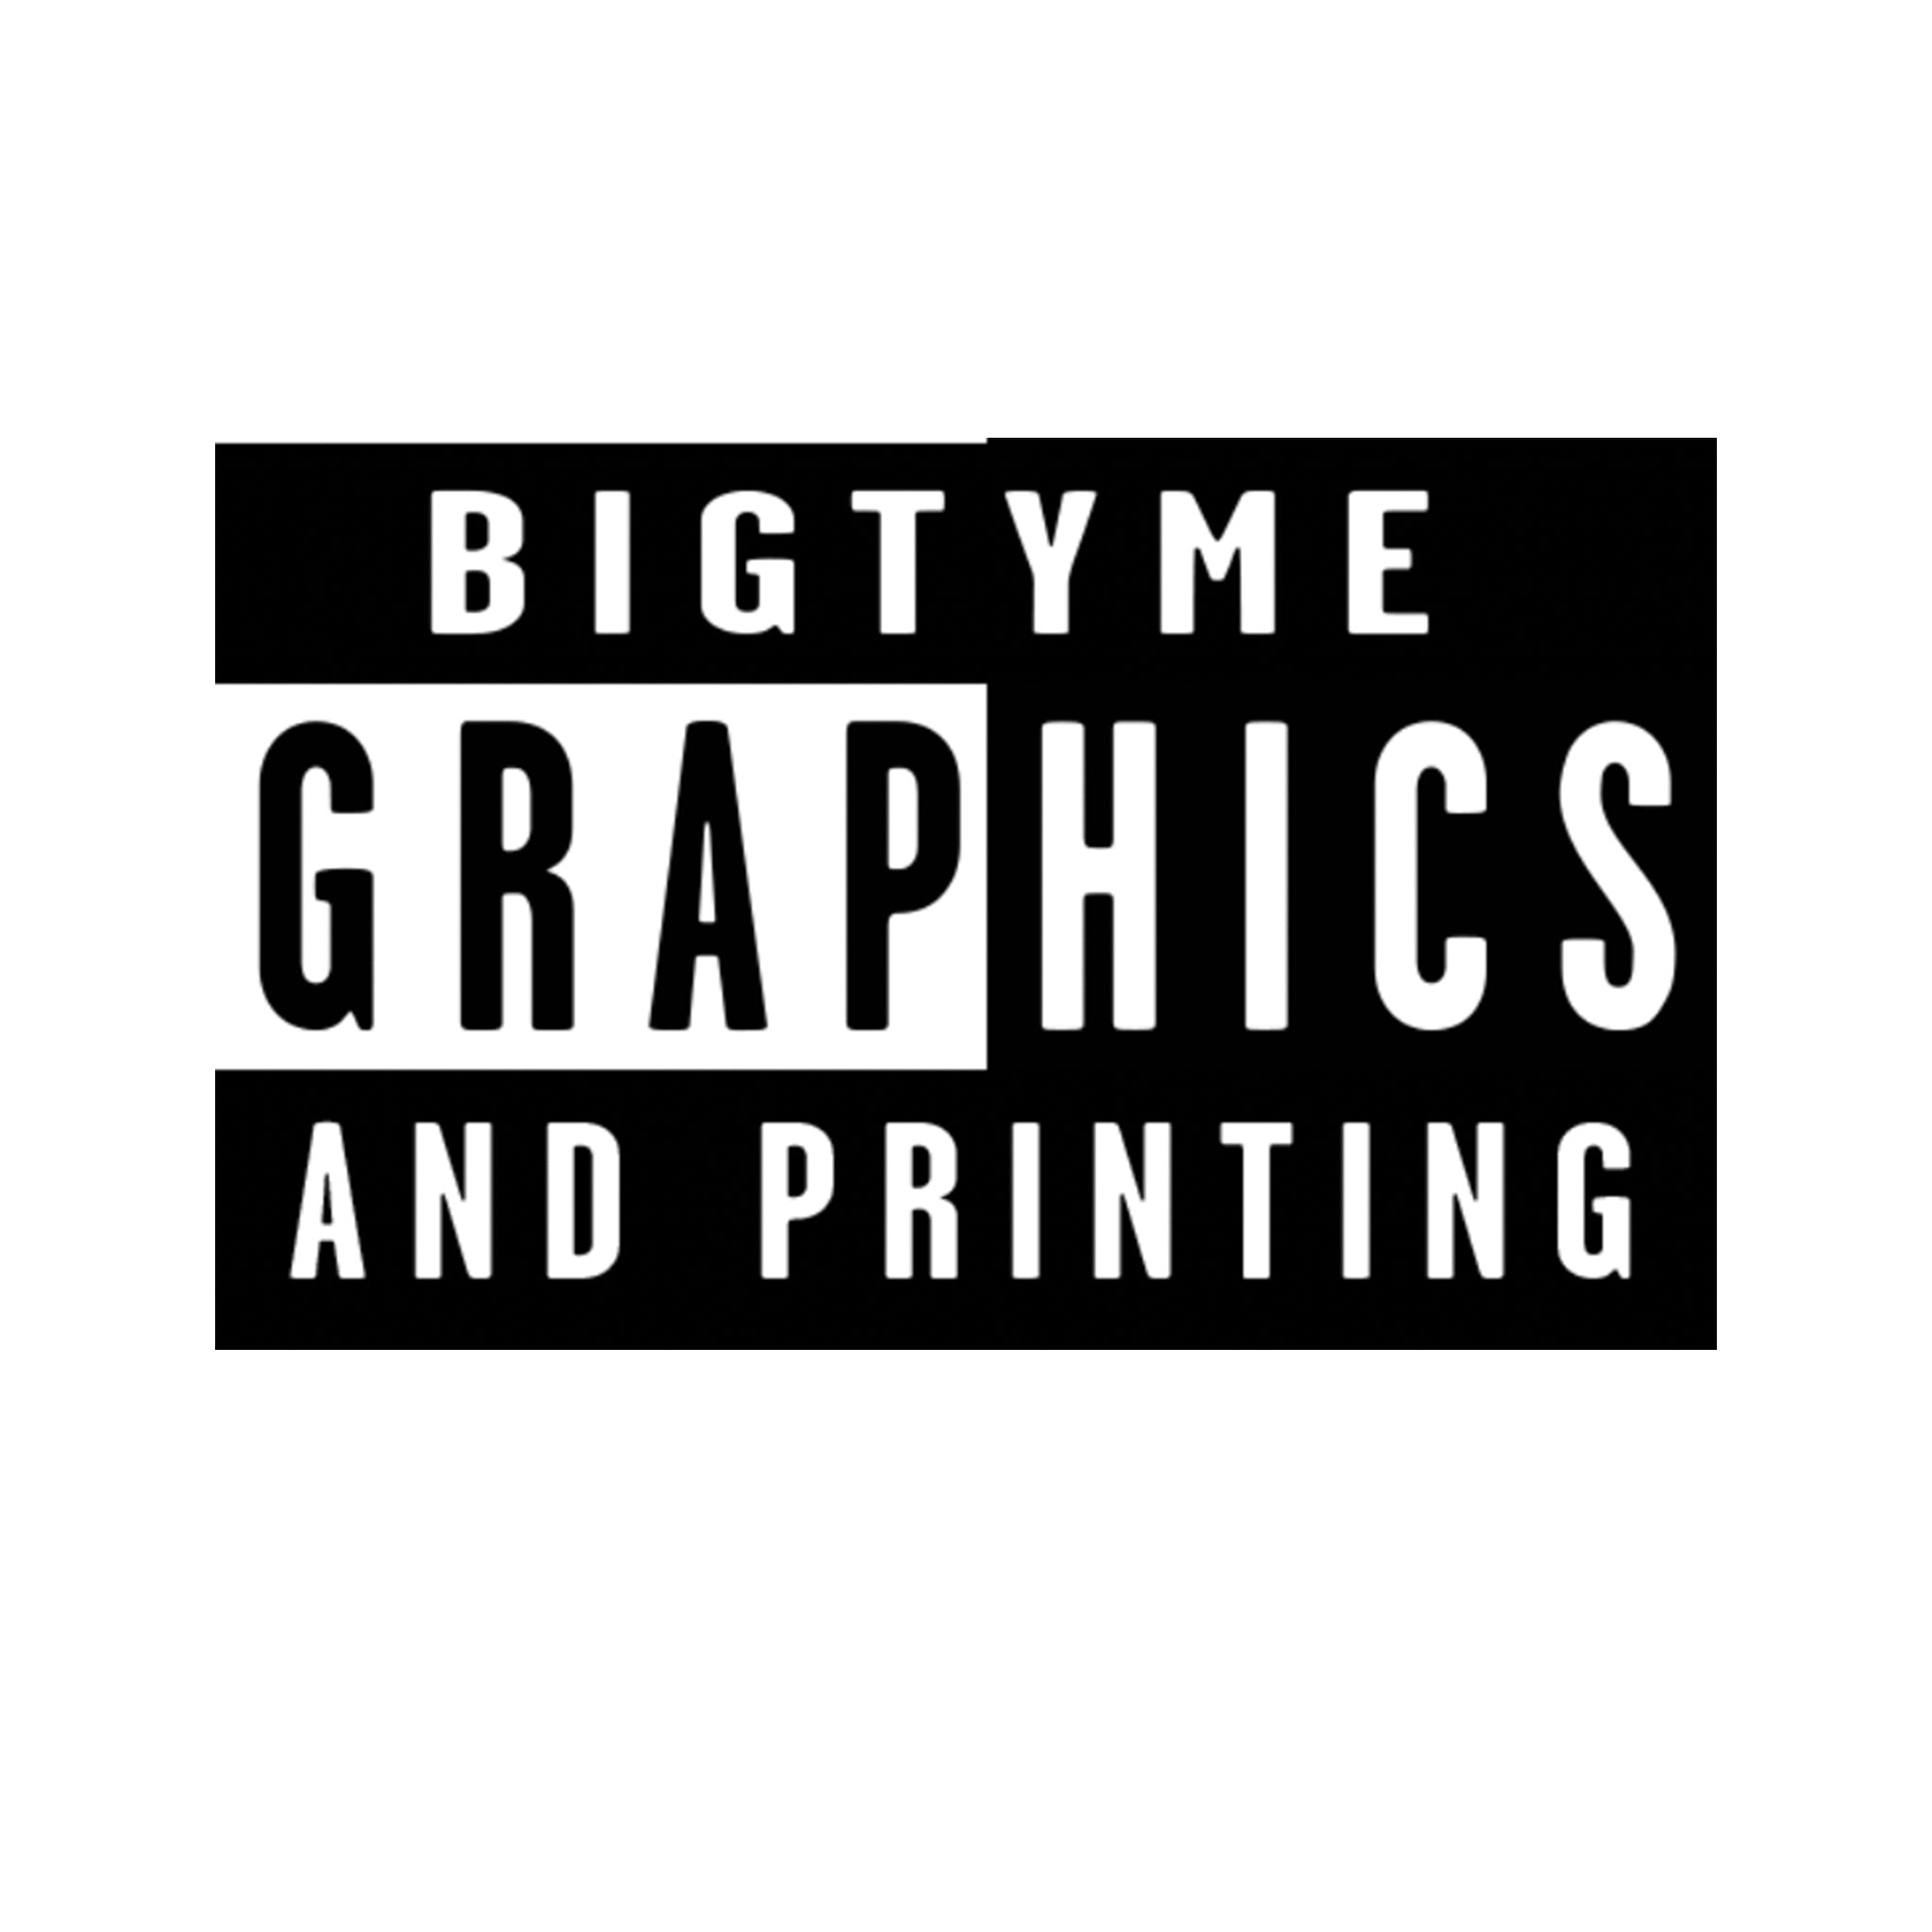 Bigtyme Graphics and Printing